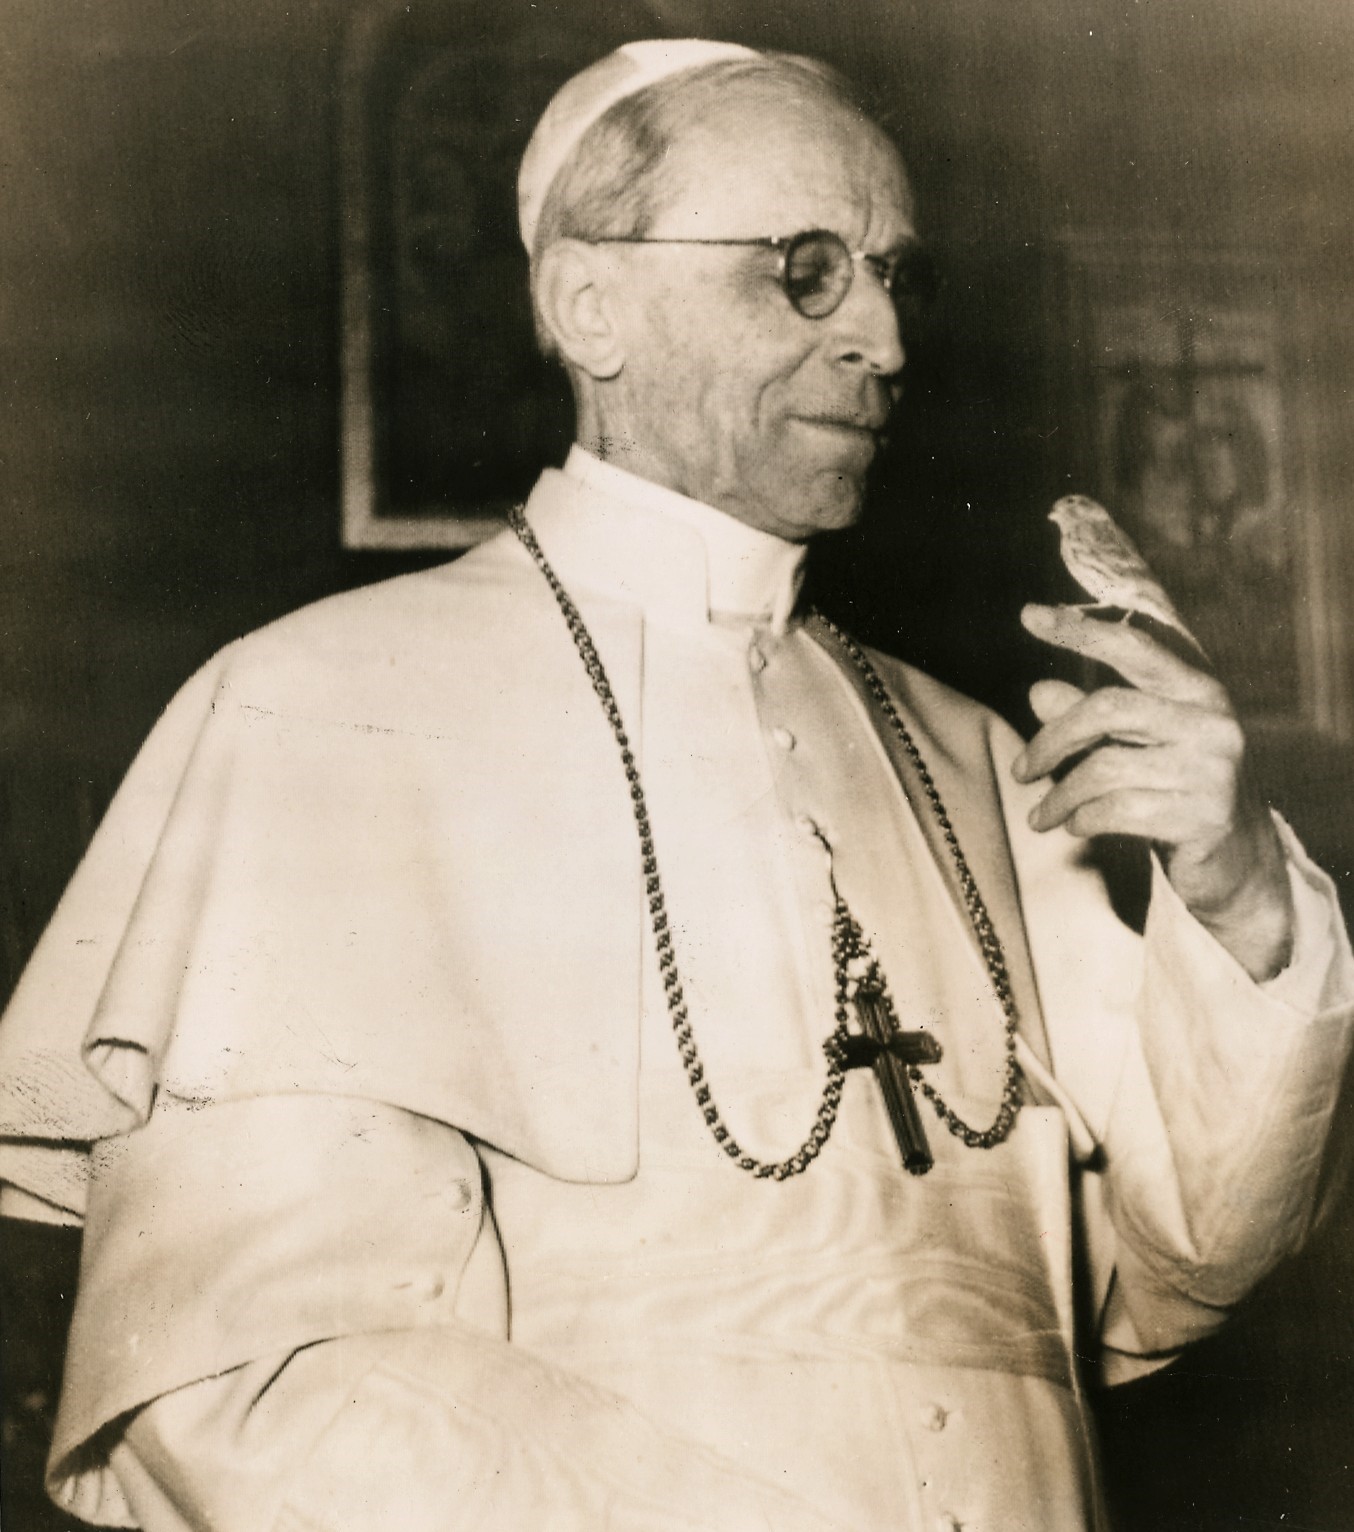  Pope Pius XII